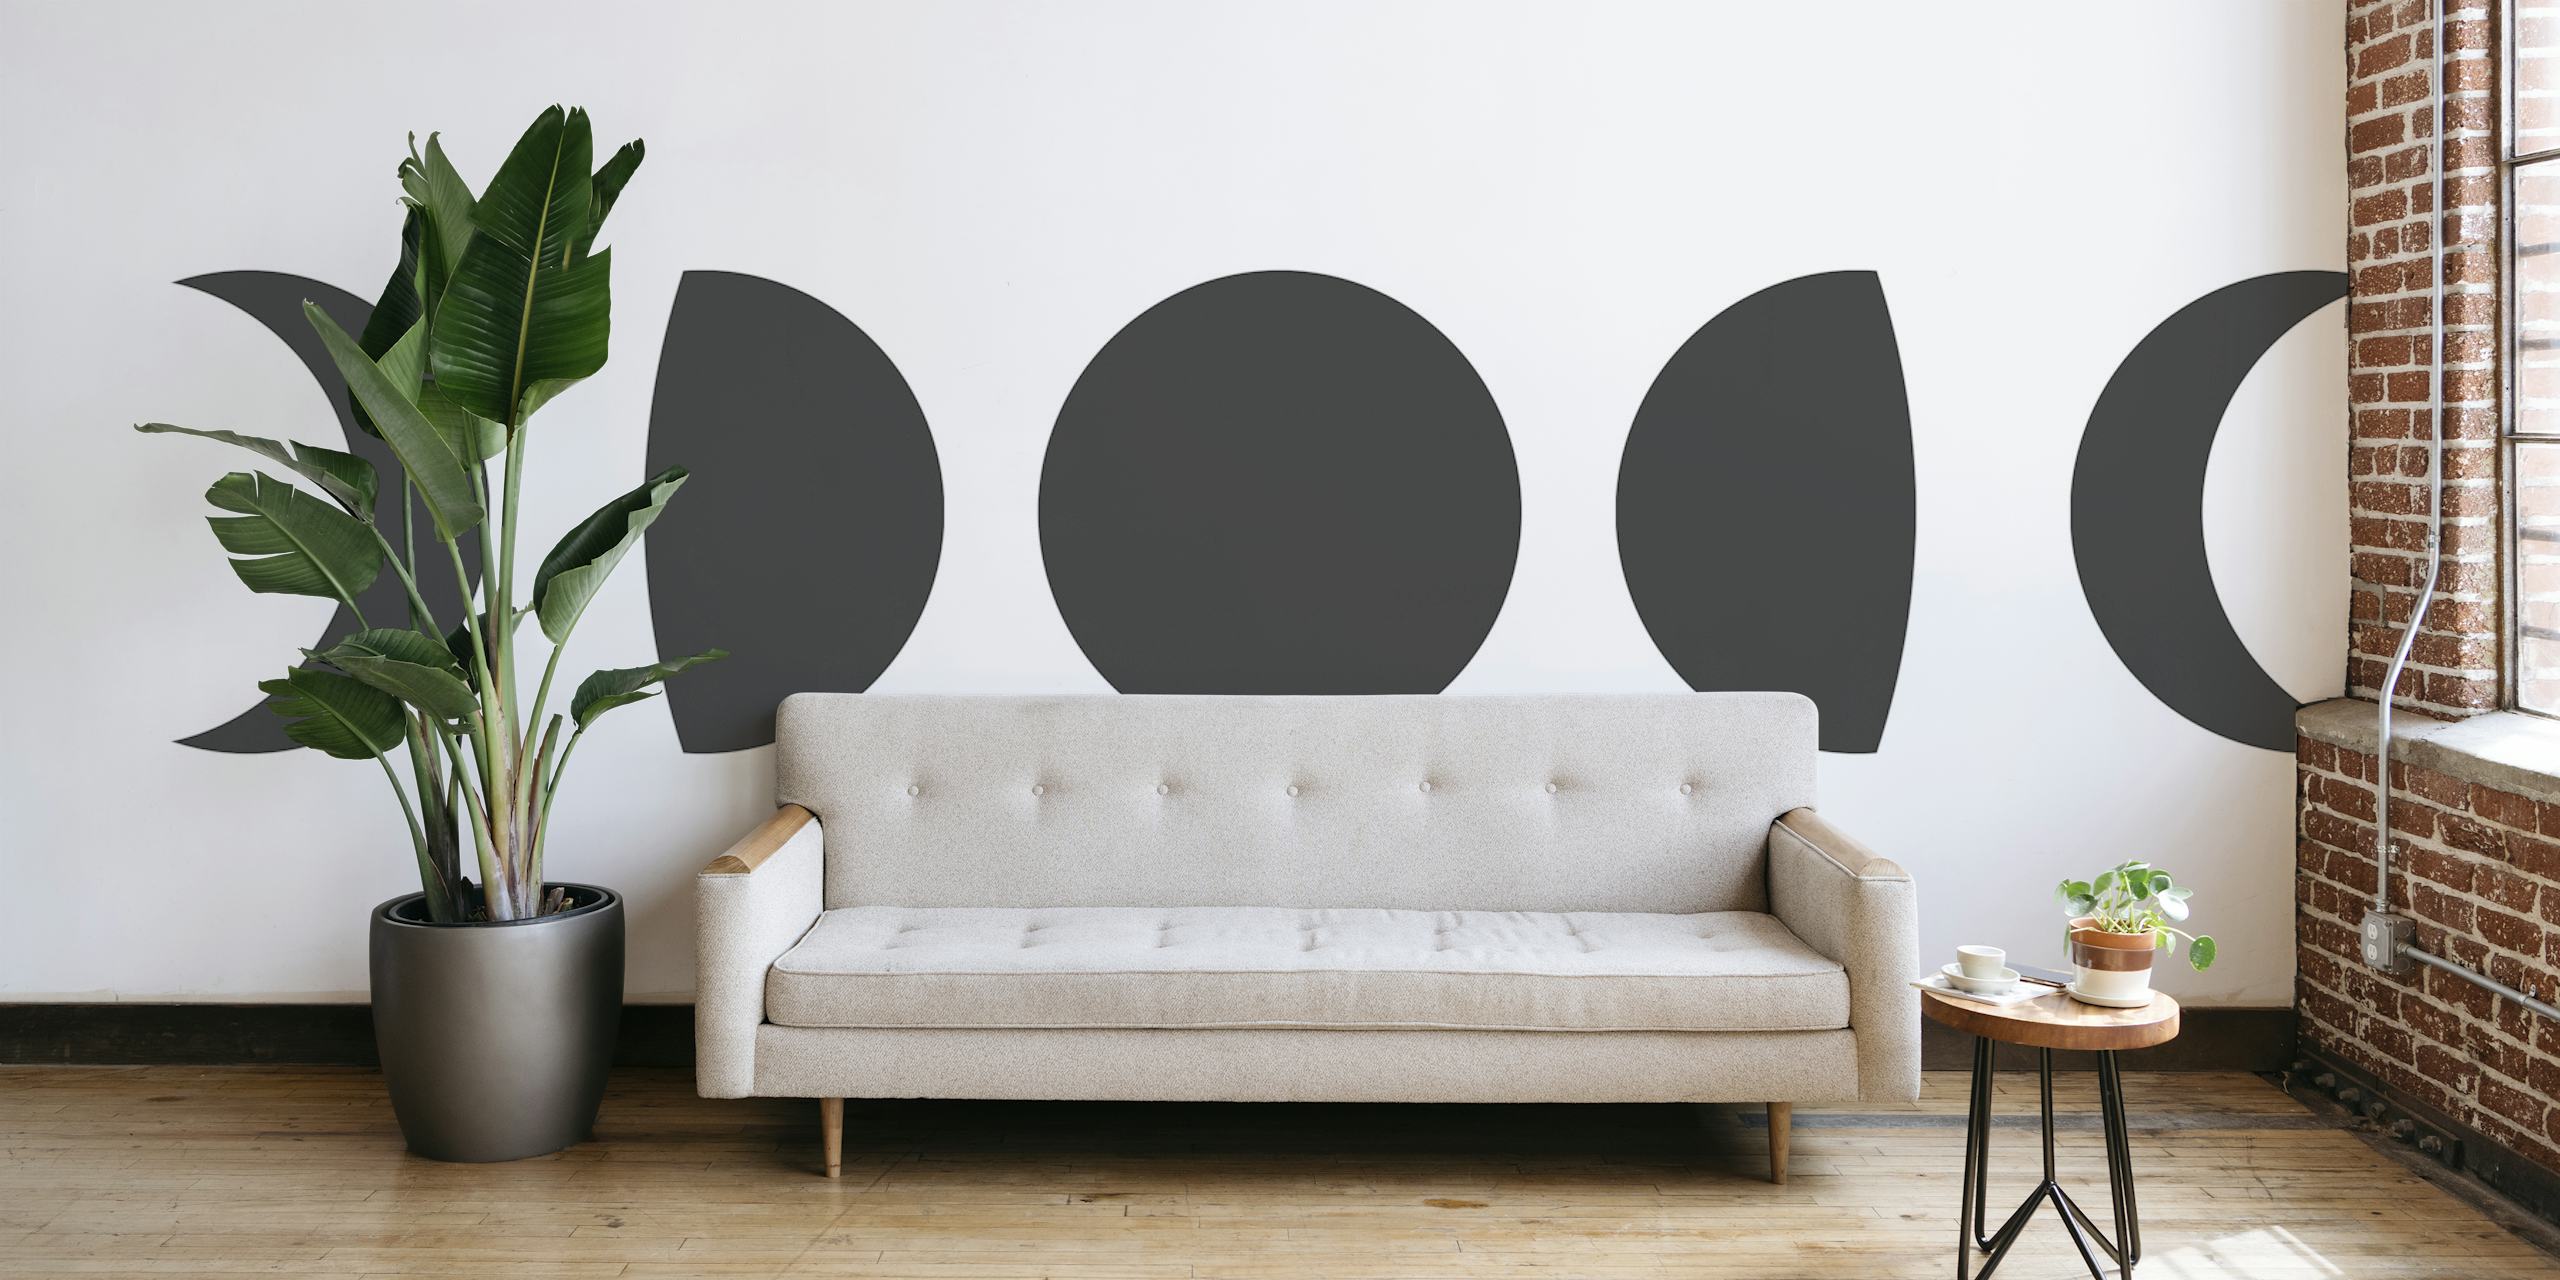 Seinätapetti kuun vaiheista minimalistisessa mustavalkoisessa designissa